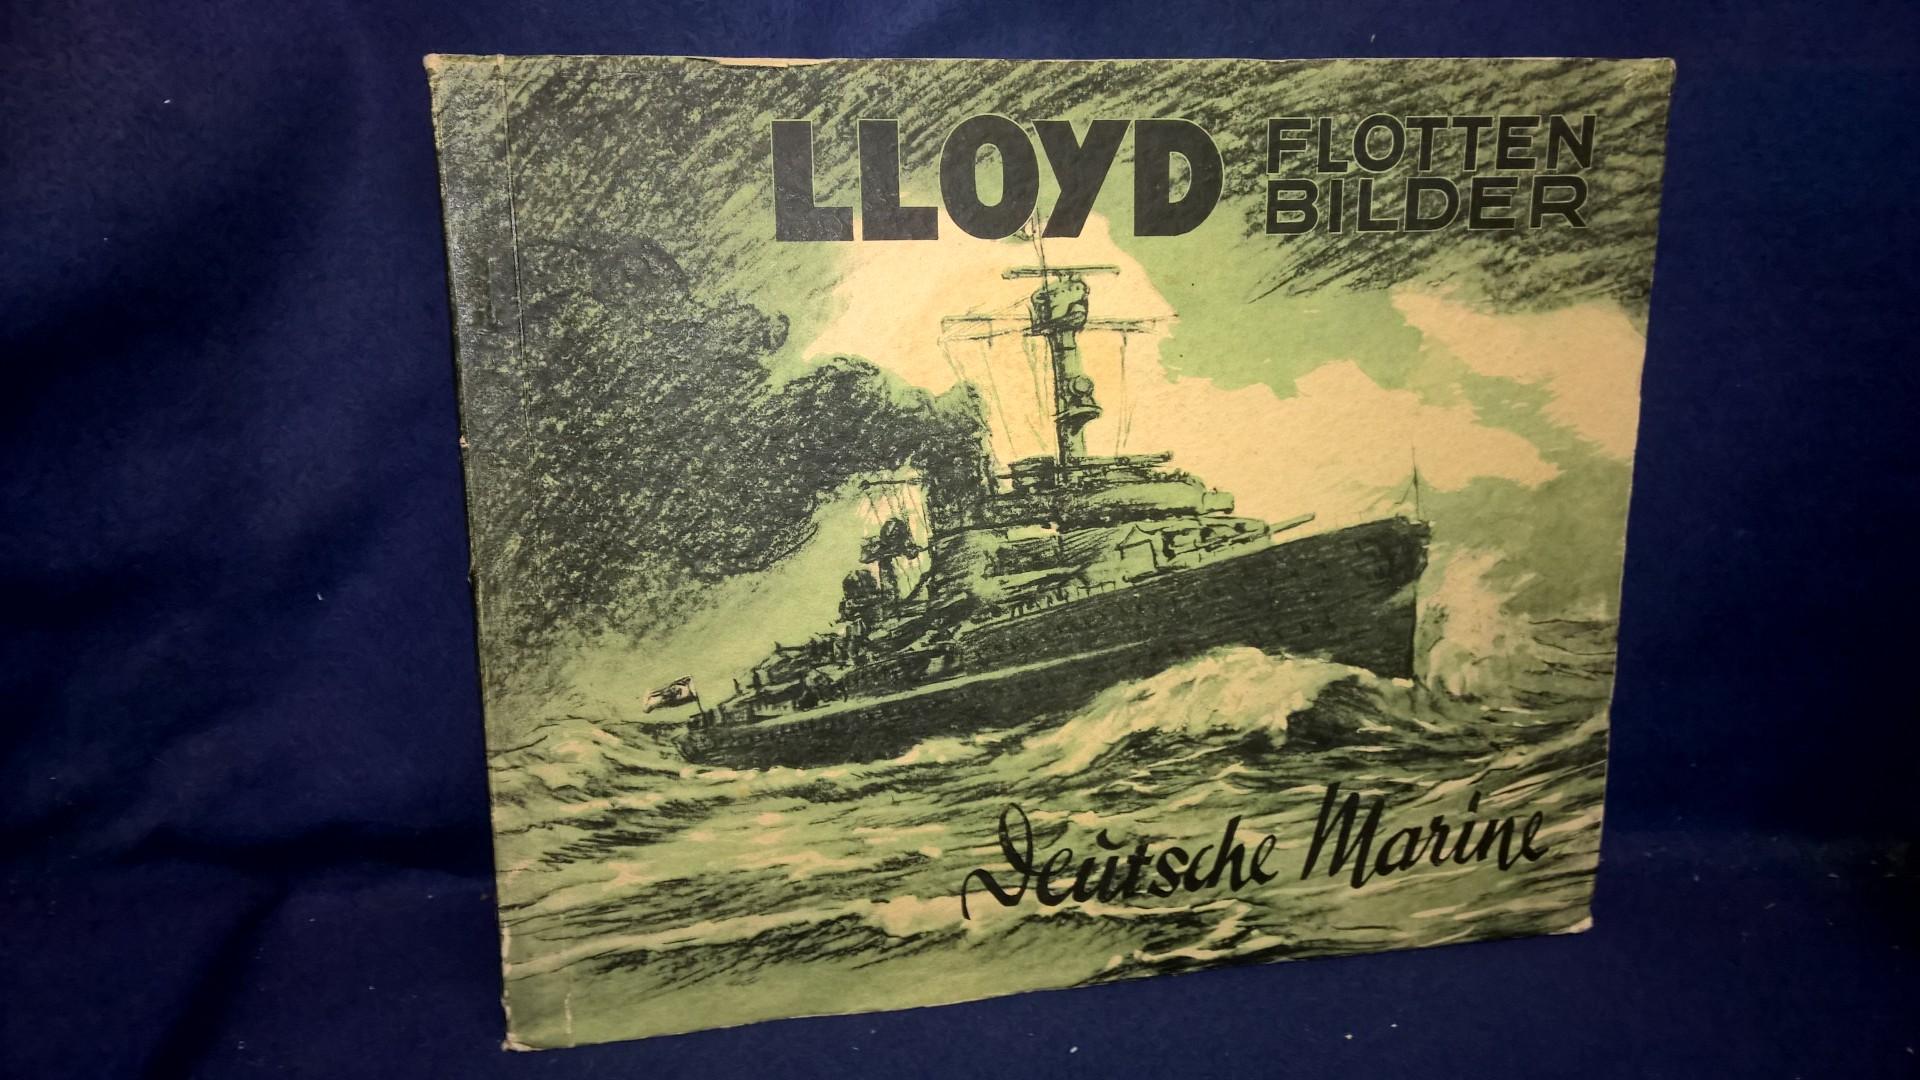 LLoyd Flotten Bilder: Deutsche Marine. Sammelbilderalbum mit den kompletten Farbsammerbilder, sauber eingeklebt.